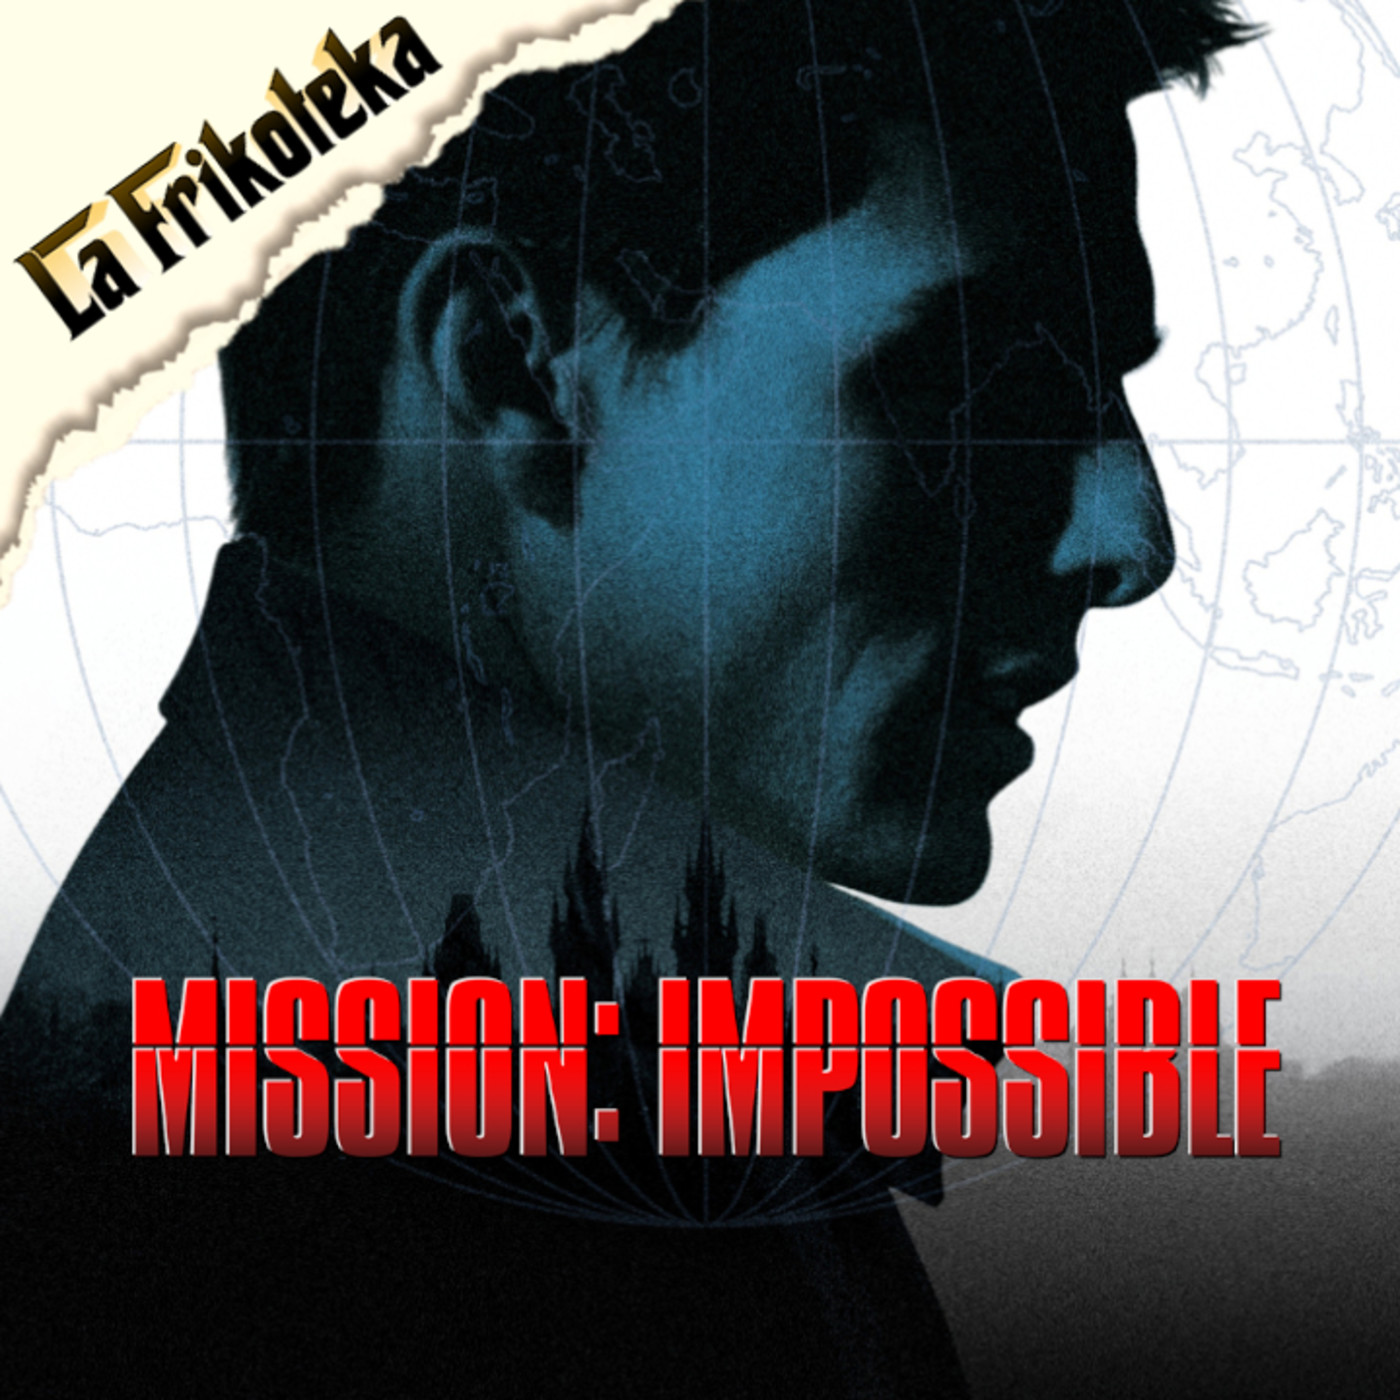 101 - Mission: Impossible (1996) - Episodio exclusivo para mecenas